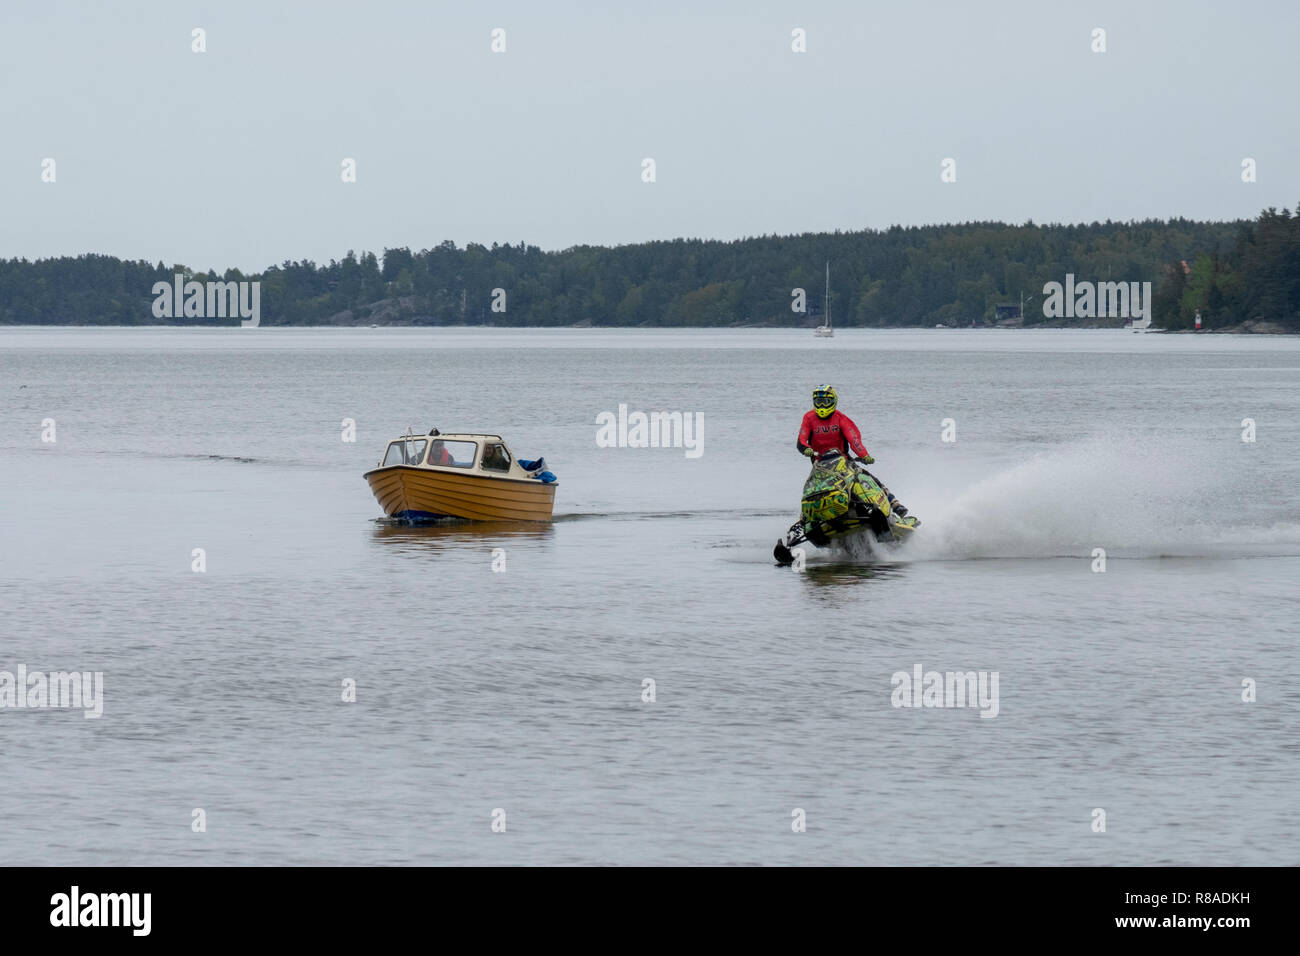 Freizeit Boot und ein Schneemobil auf Wasser, Norrtälje, Schweden konkurrieren. Stockfoto